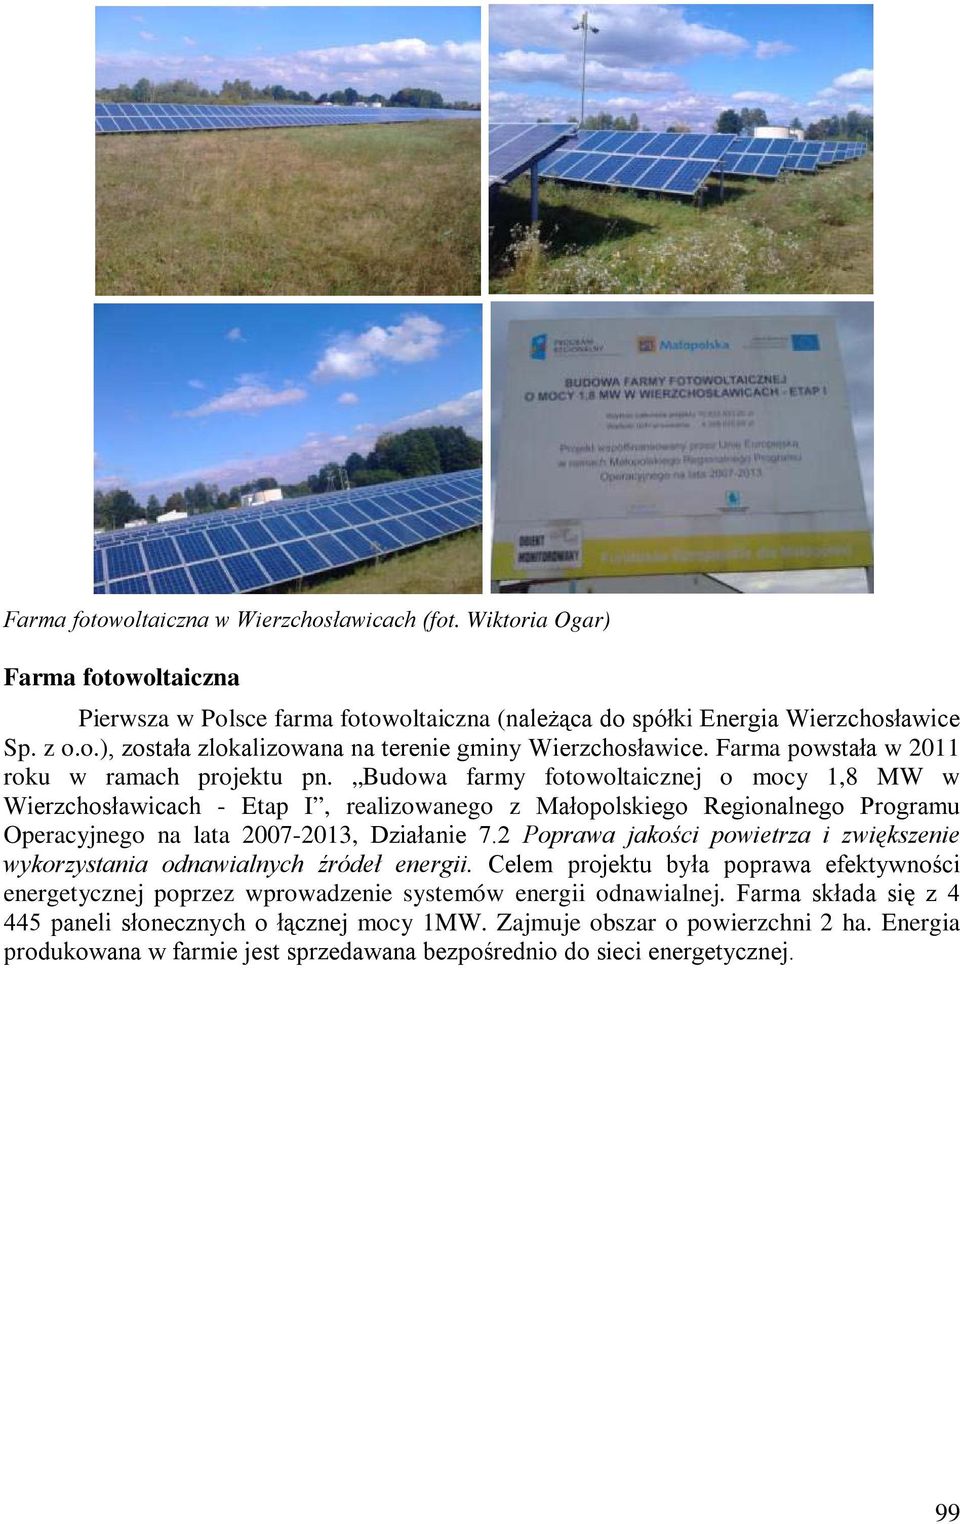 Budowa farmy fotowoltaicznej o mocy 1,8 MW w Wierzchosławicach - Etap I, realizowanego z Małopolskiego Regionalnego Programu Operacyjnego na lata 2007-2013, Działanie 7.